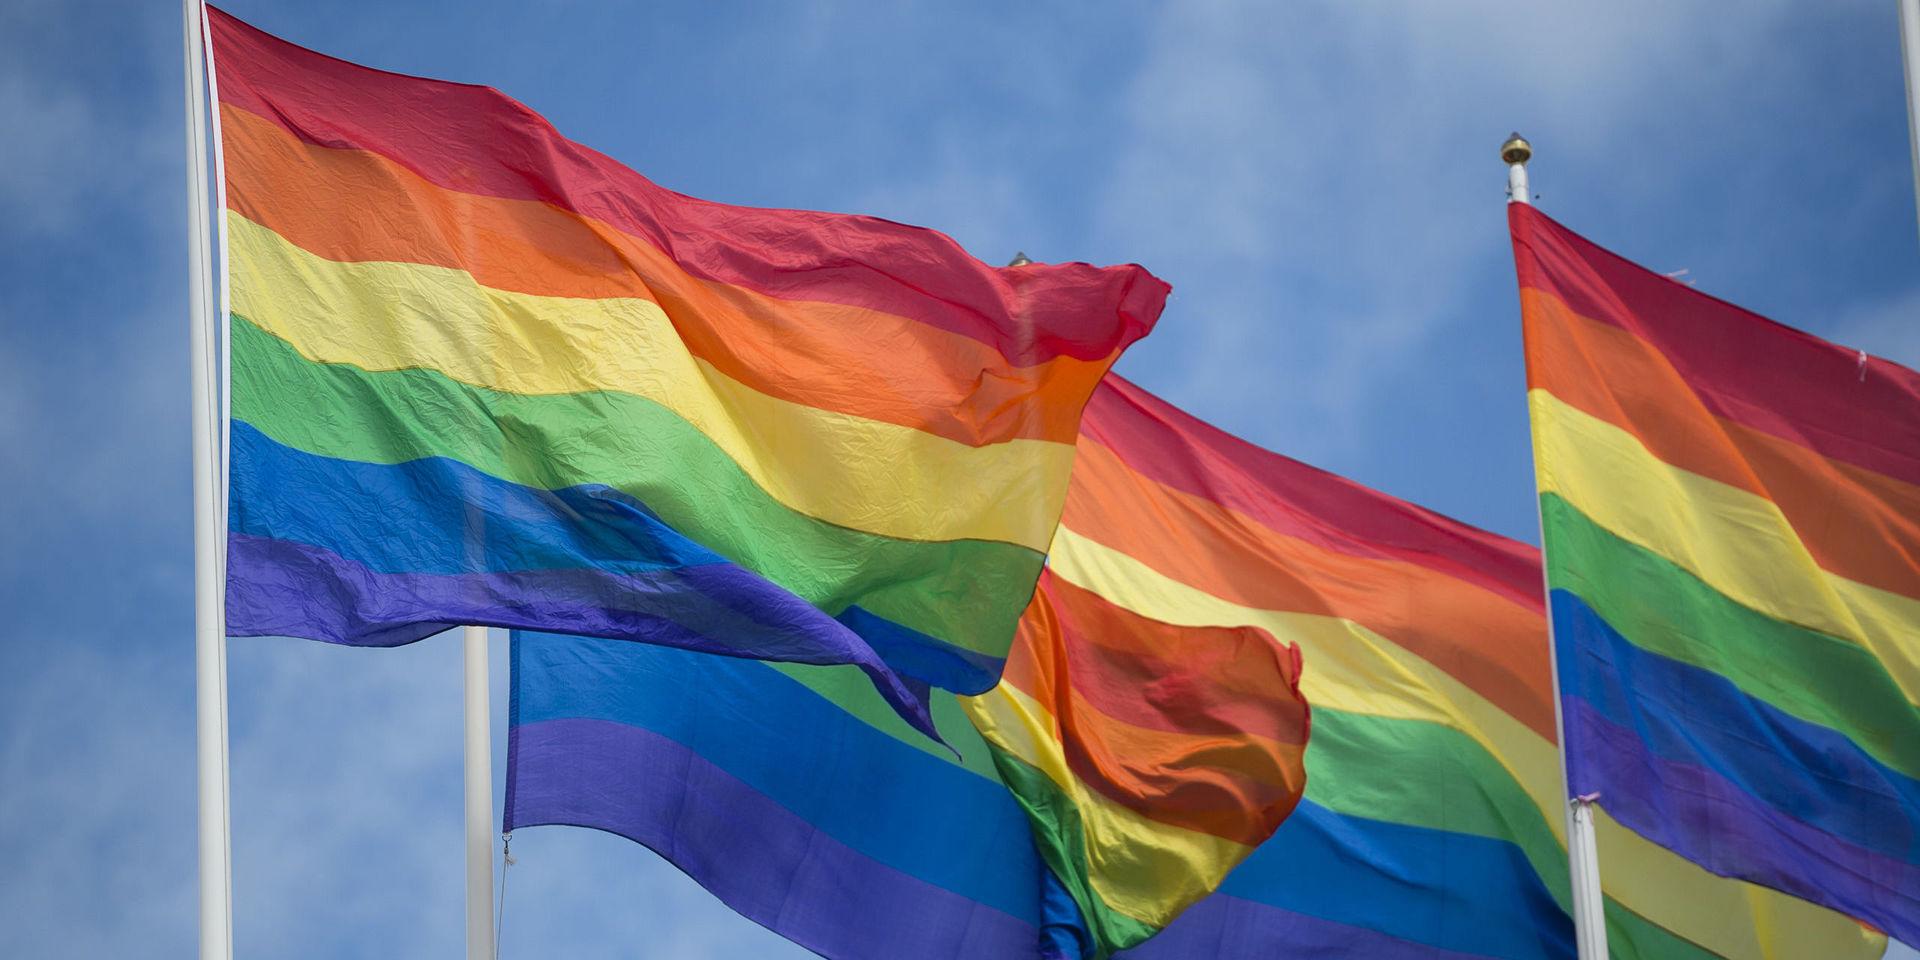 Prideflaggorna hängde kvar i bibliotekets lokaler sedan Europride. Nu har de tagits bort på SD:s begäran.